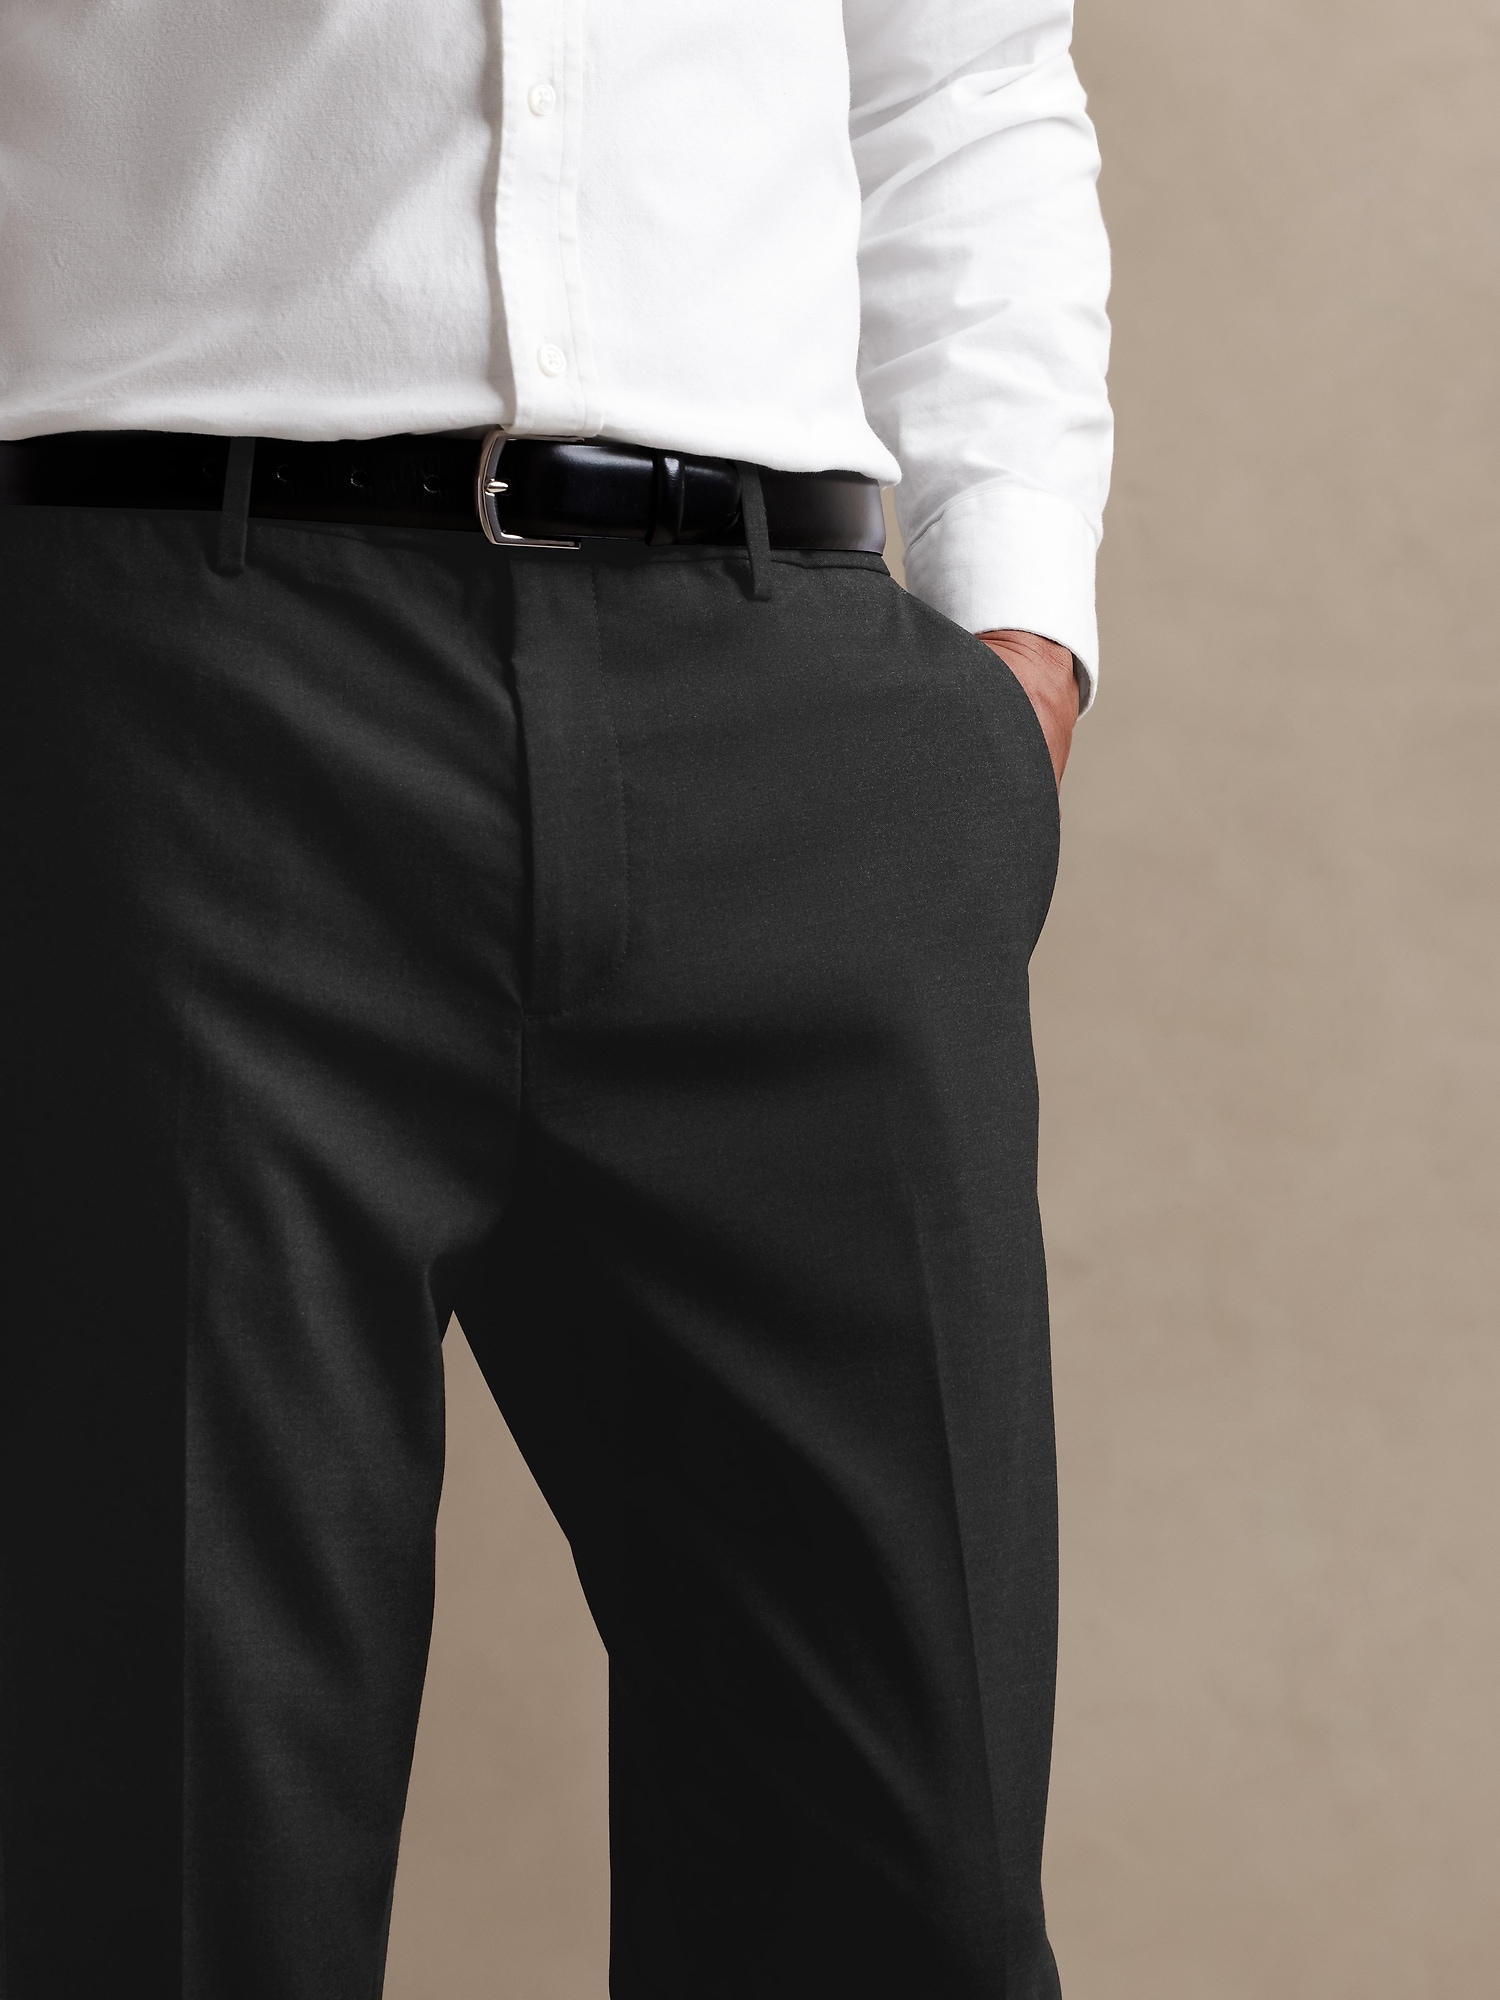 Mens Formal Black Trousers For Mens | Jet Black Formal Trouser For Men